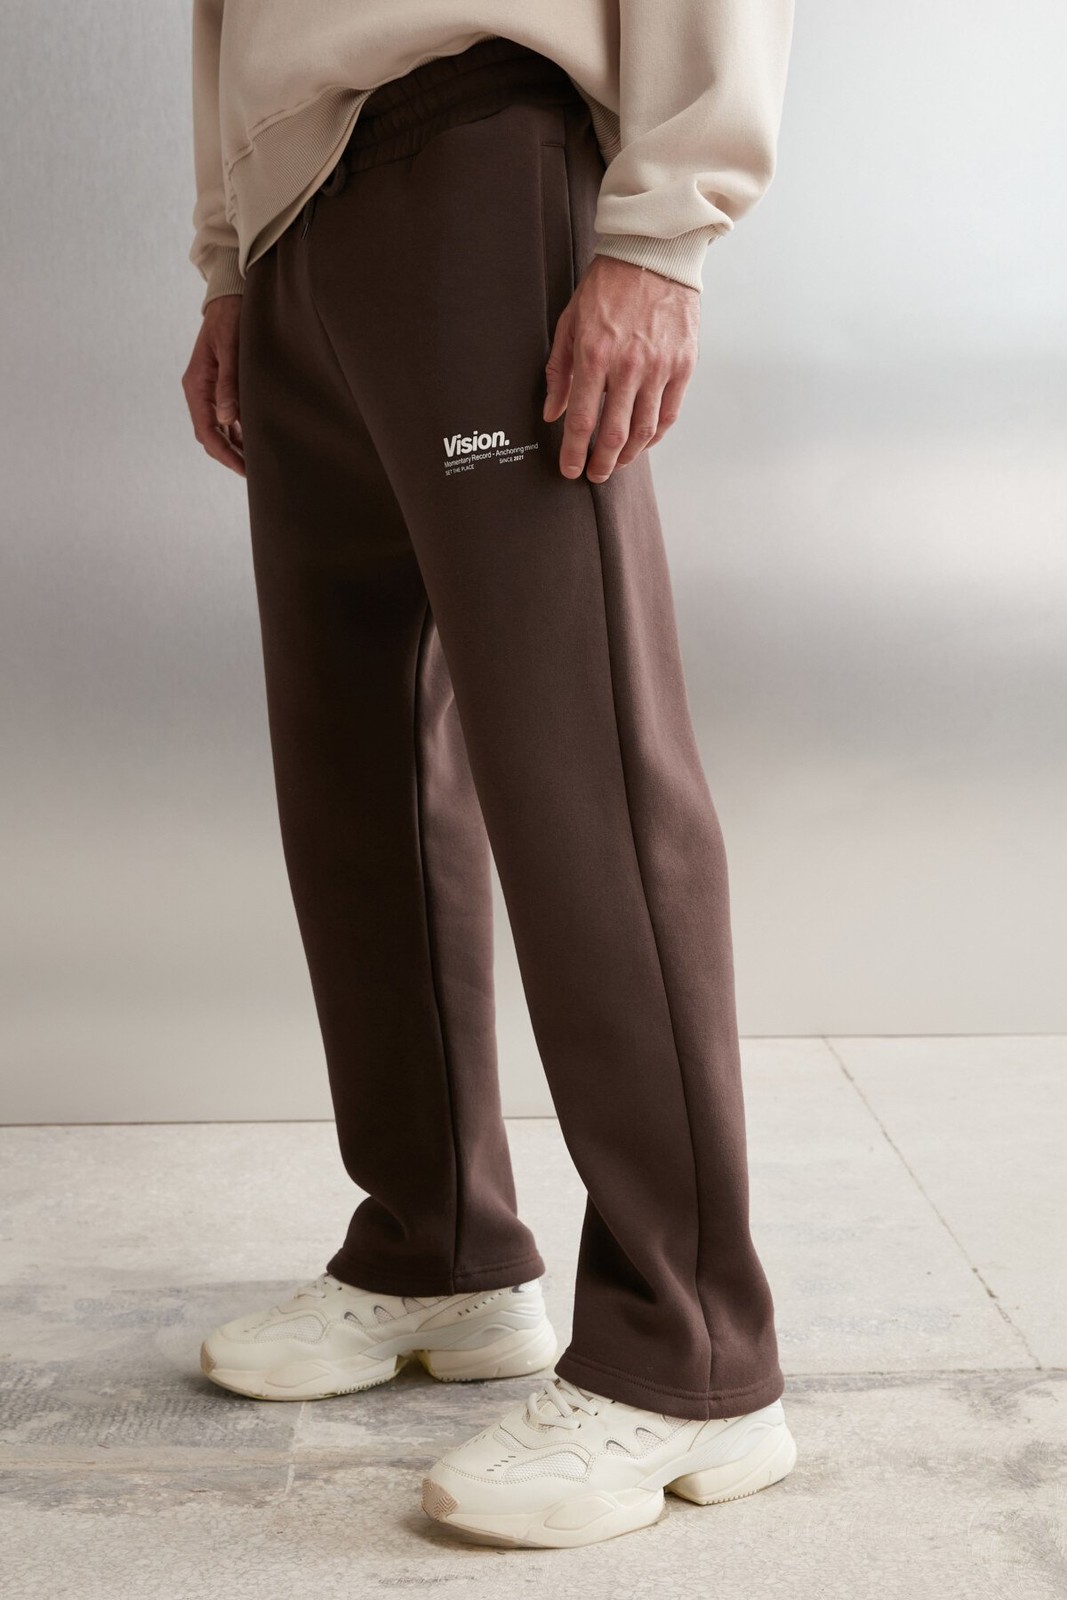 GRIMELANGE Freddy Men's Regular Fit Soft Fabric Printed 3 Pocket Bitter Brown Sweatpant